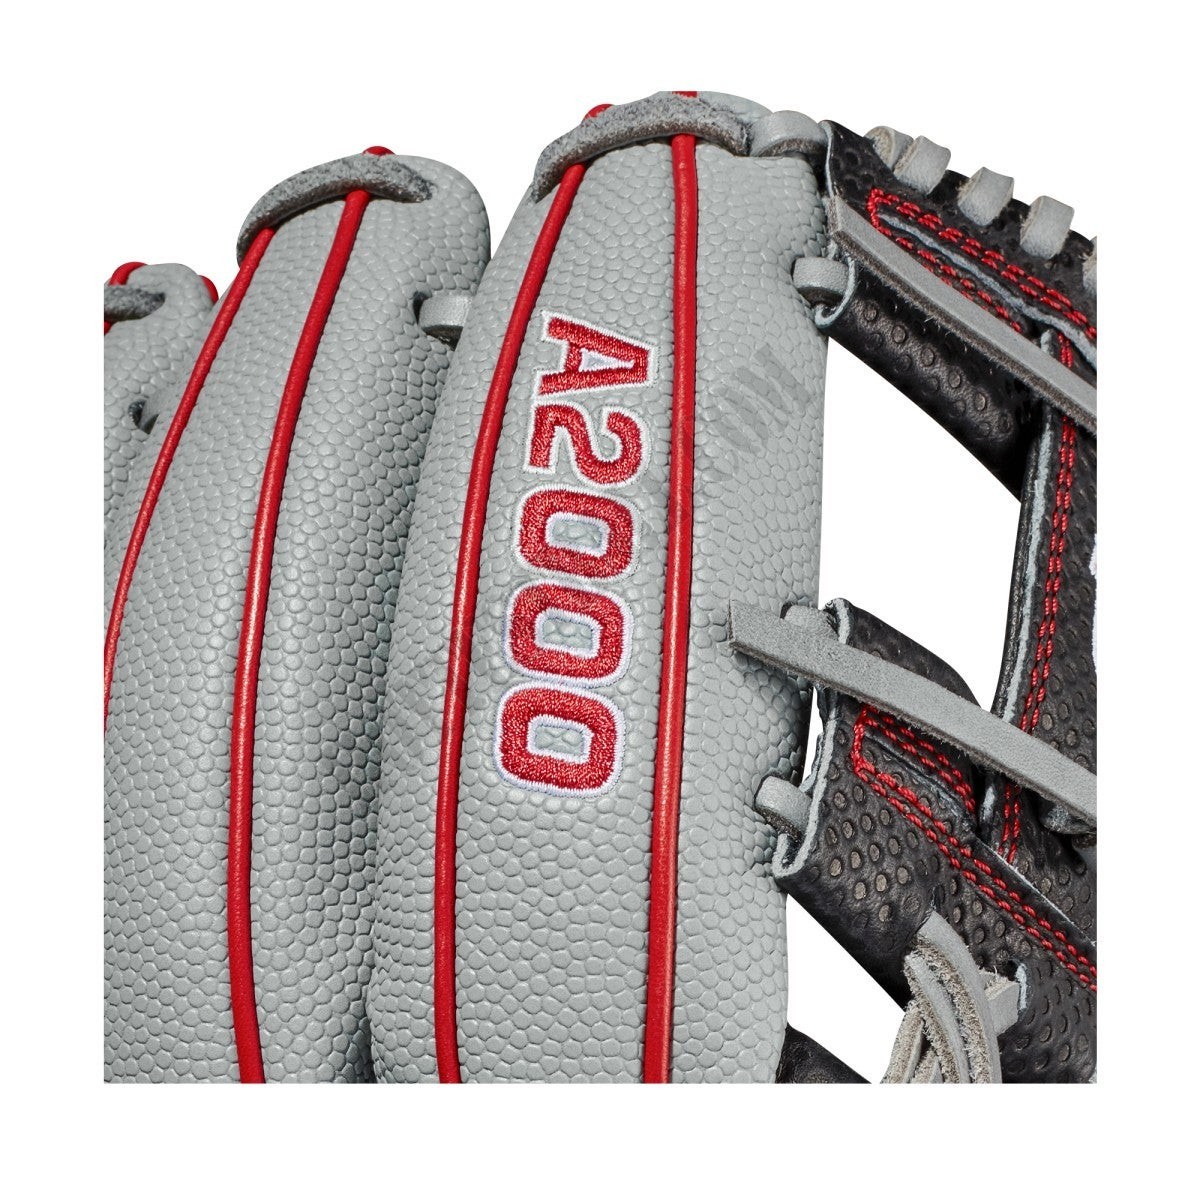 2021 A2000 SC1975SS 11.75" Infield Baseball Glove ● Wilson Promotions - -6